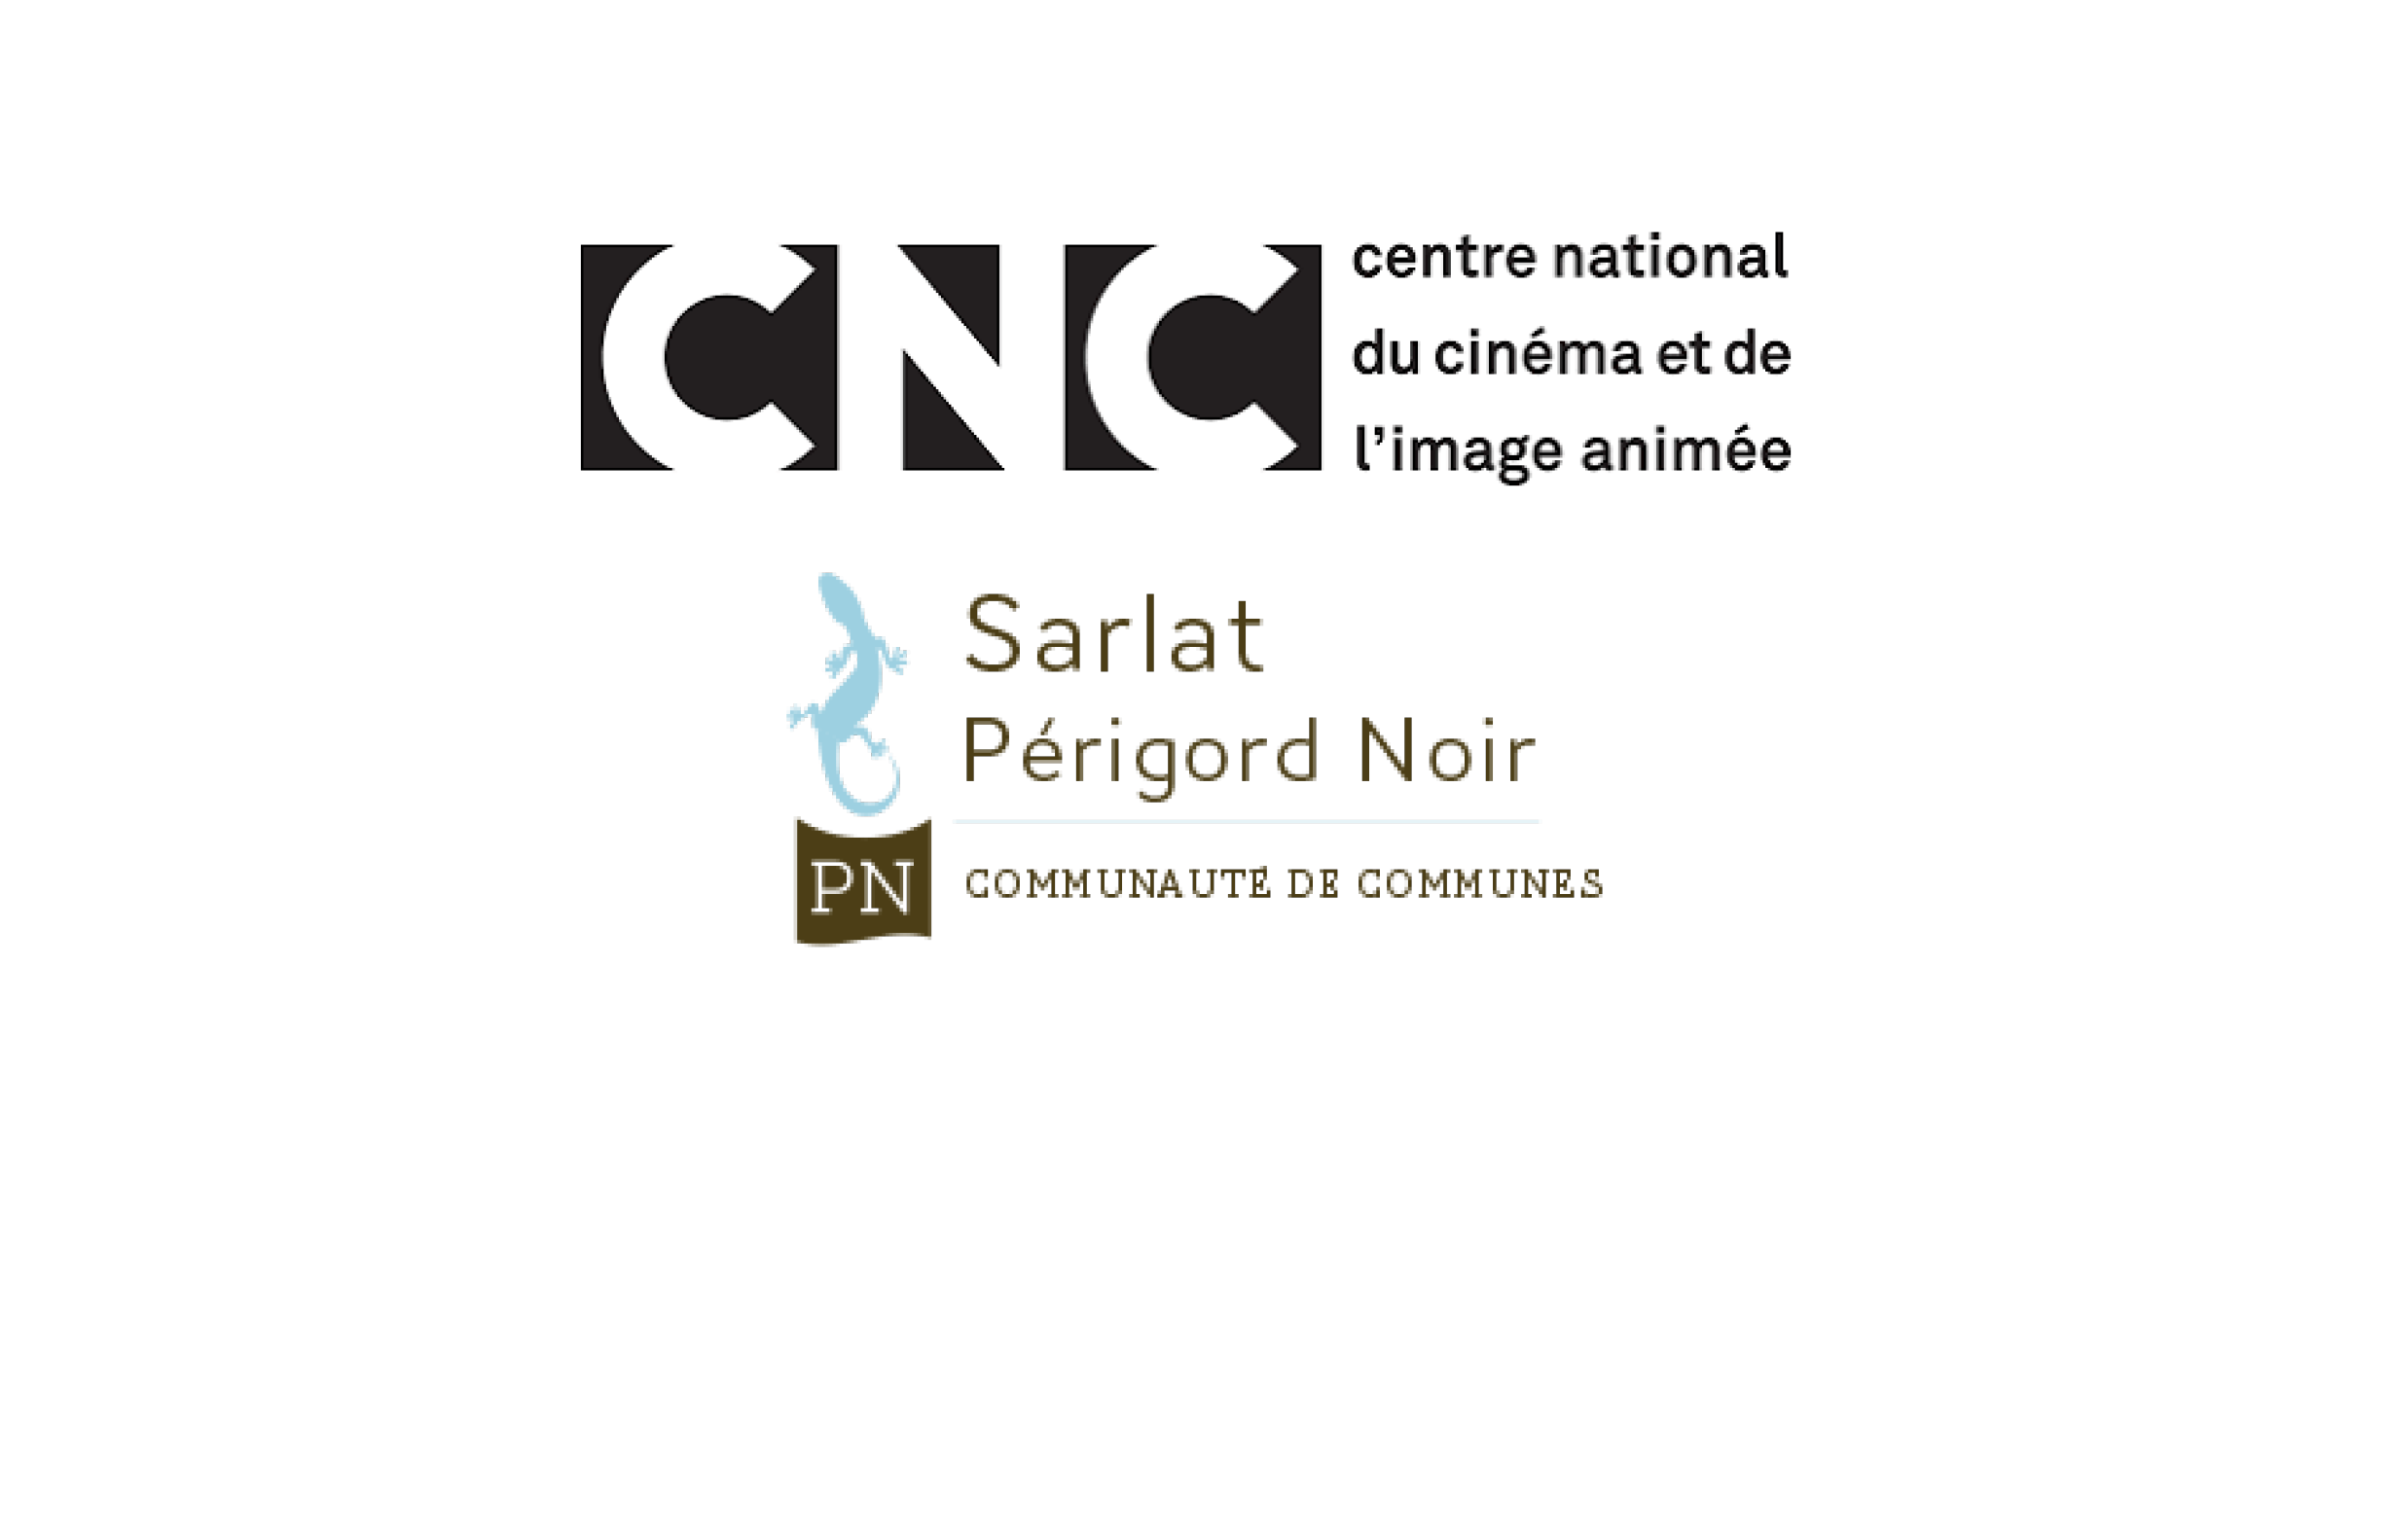 Communauté de communes Sarlat - Périgord Noir